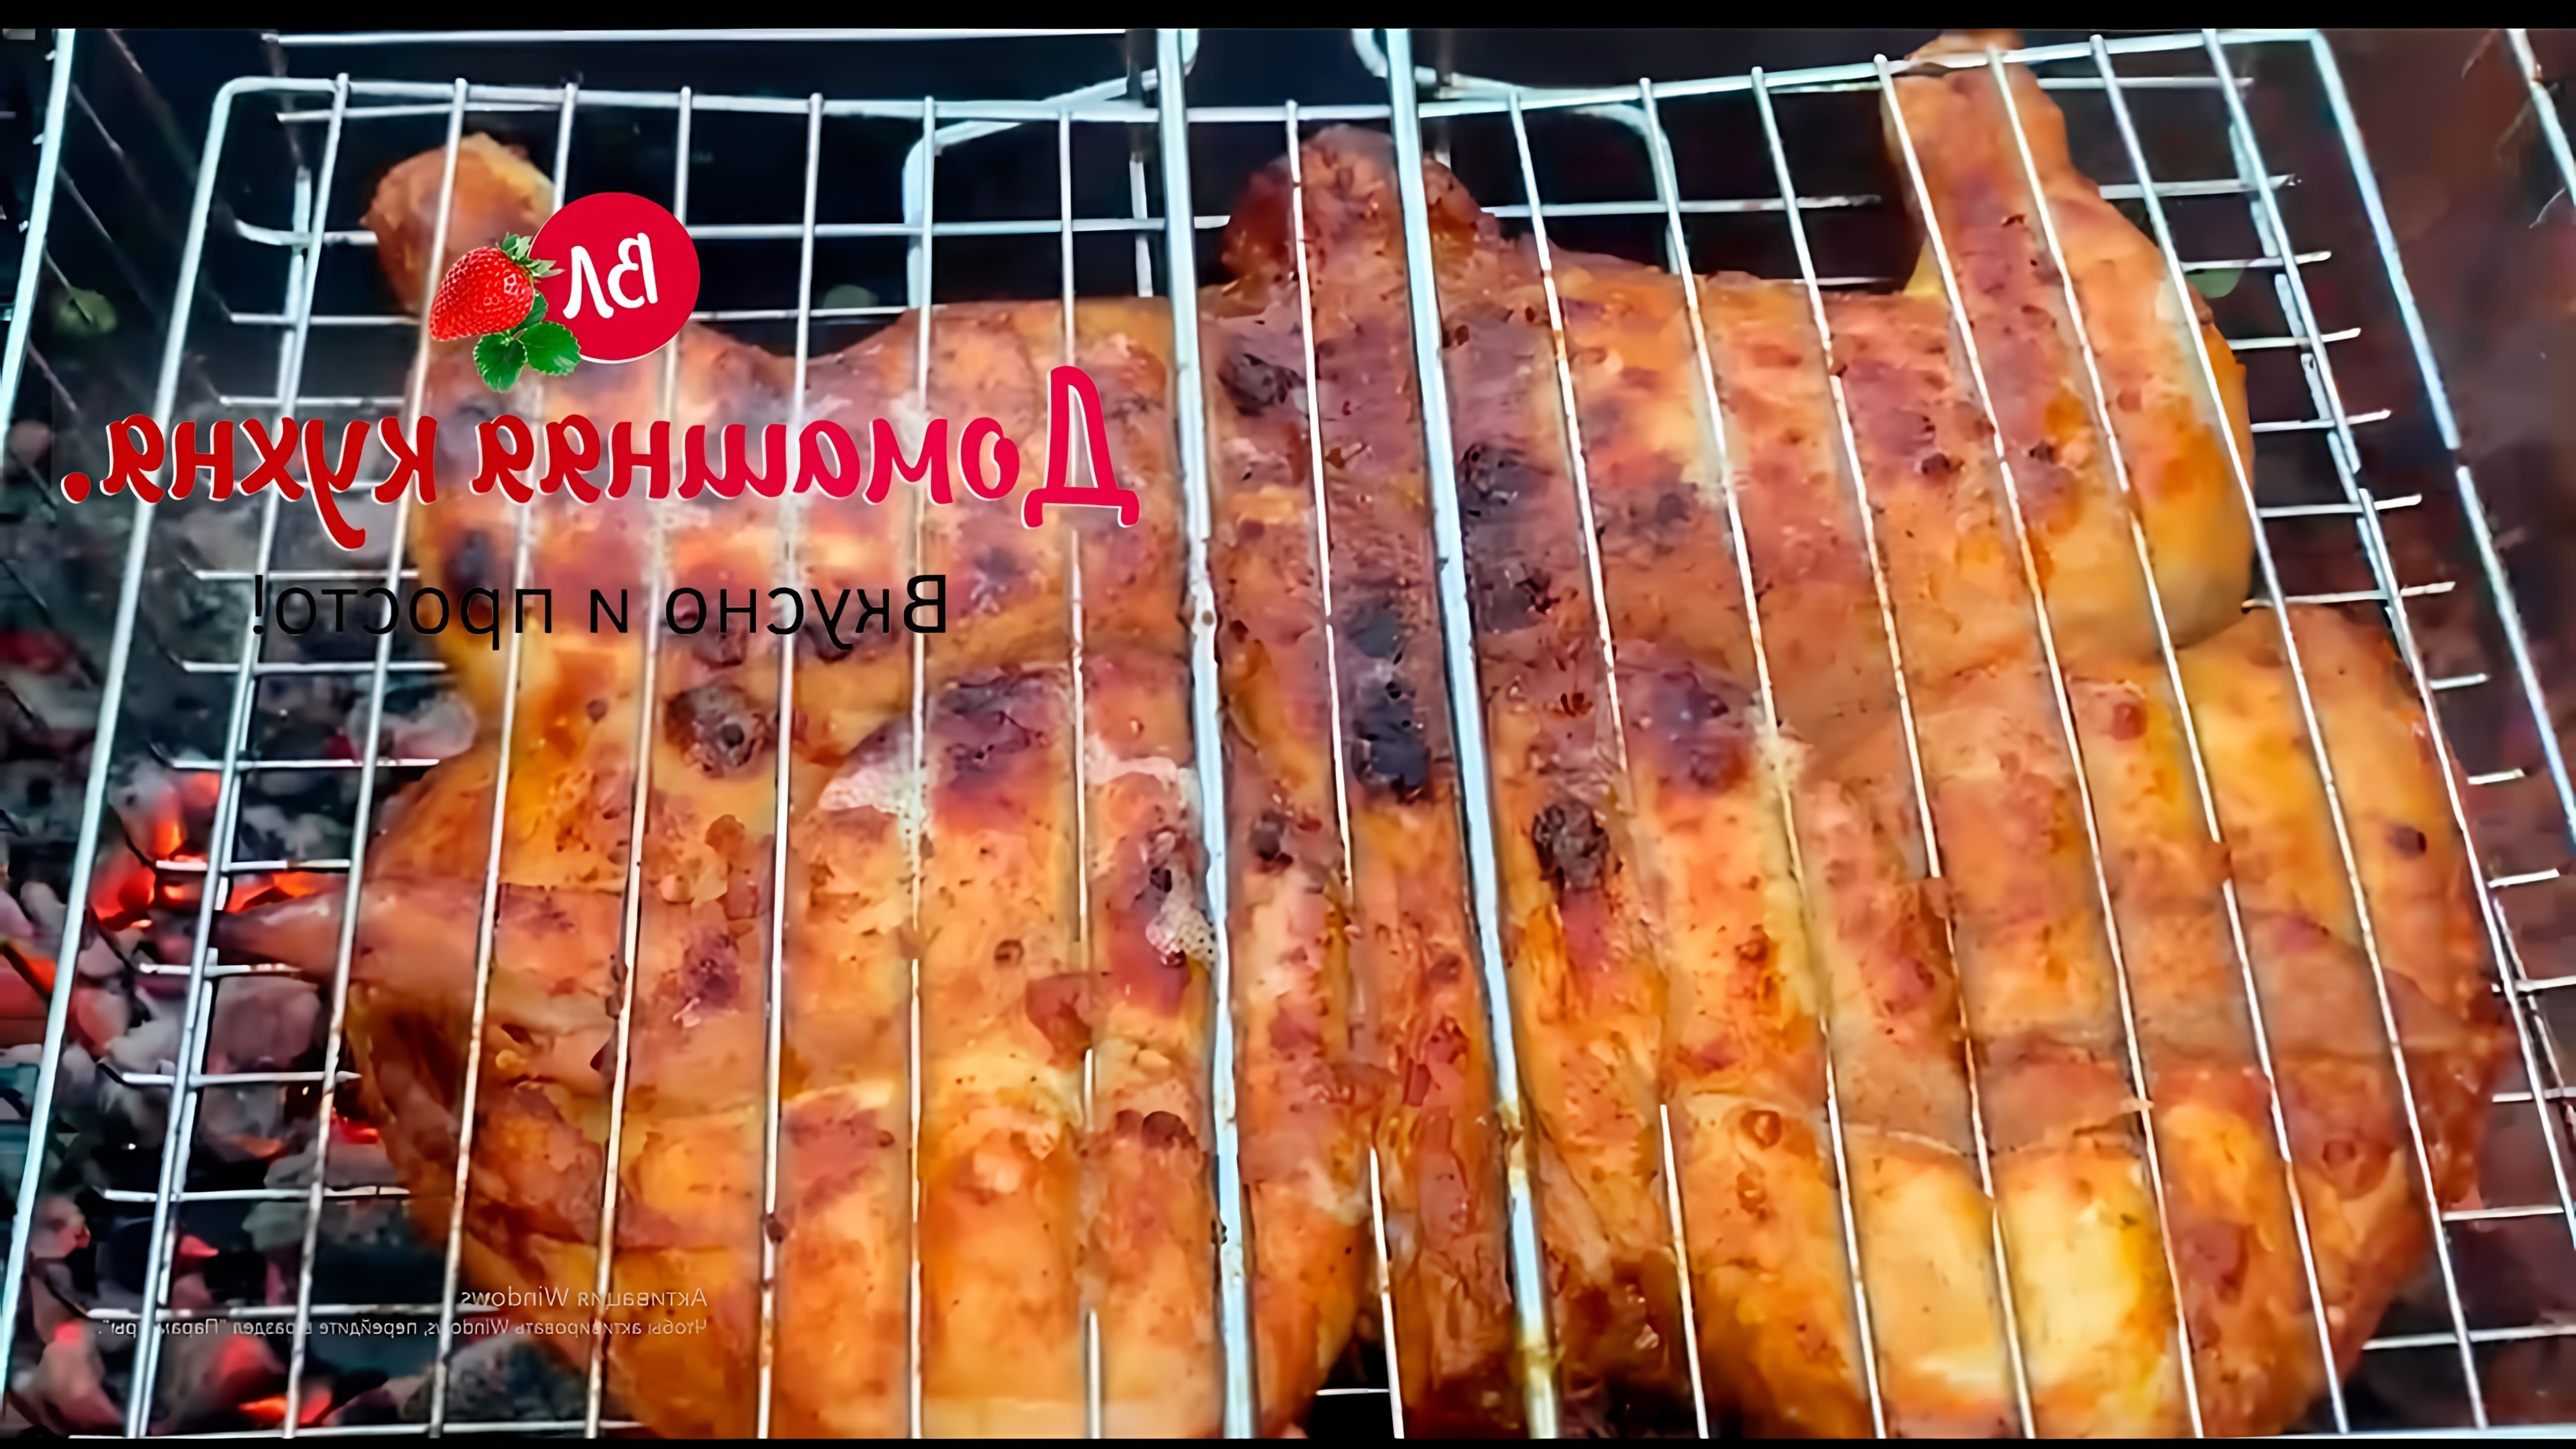 В этом видео демонстрируется процесс приготовления курицы на мангале с использованием специального маринада